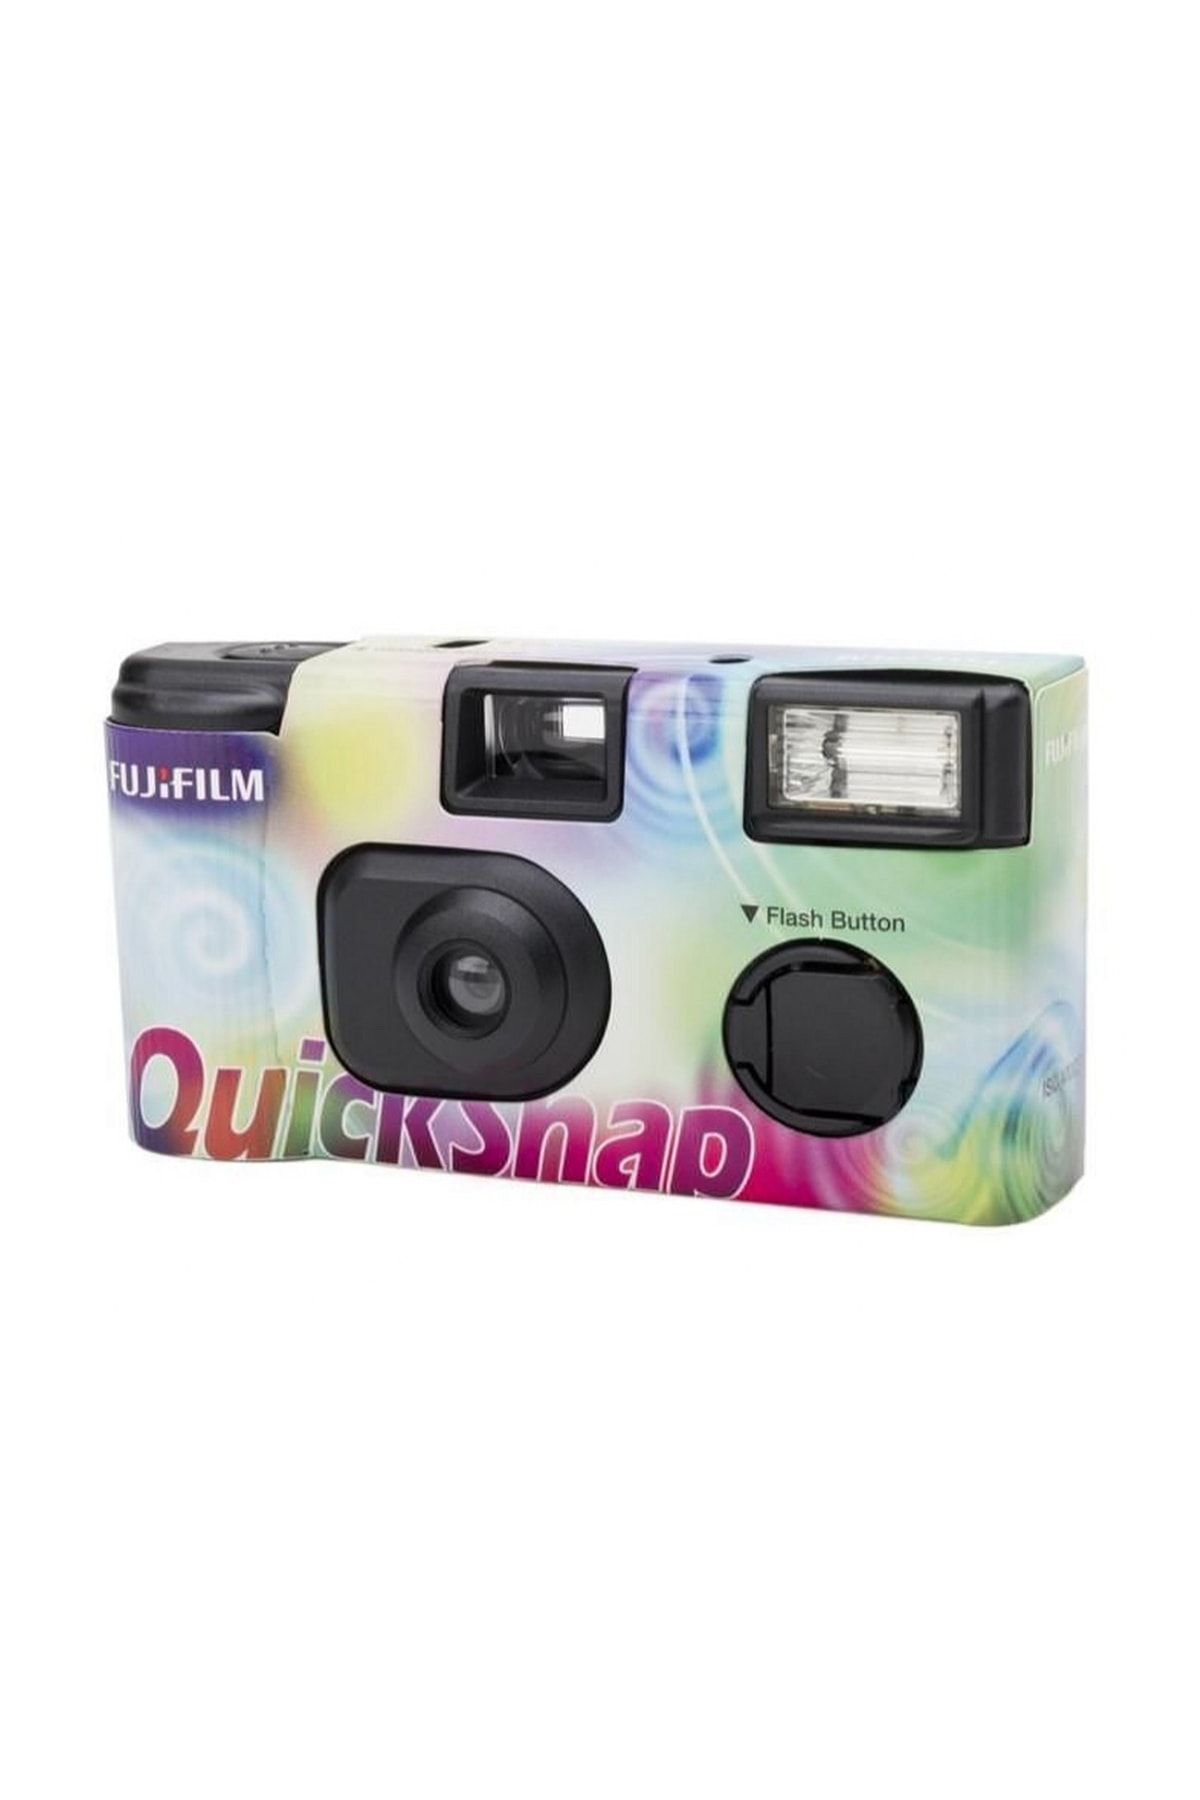 Fujifilm Quicksnap 27 Pozluk Tek Kullanımlık Analog Fotoğraf Makinesi S.k.t.:2025-02